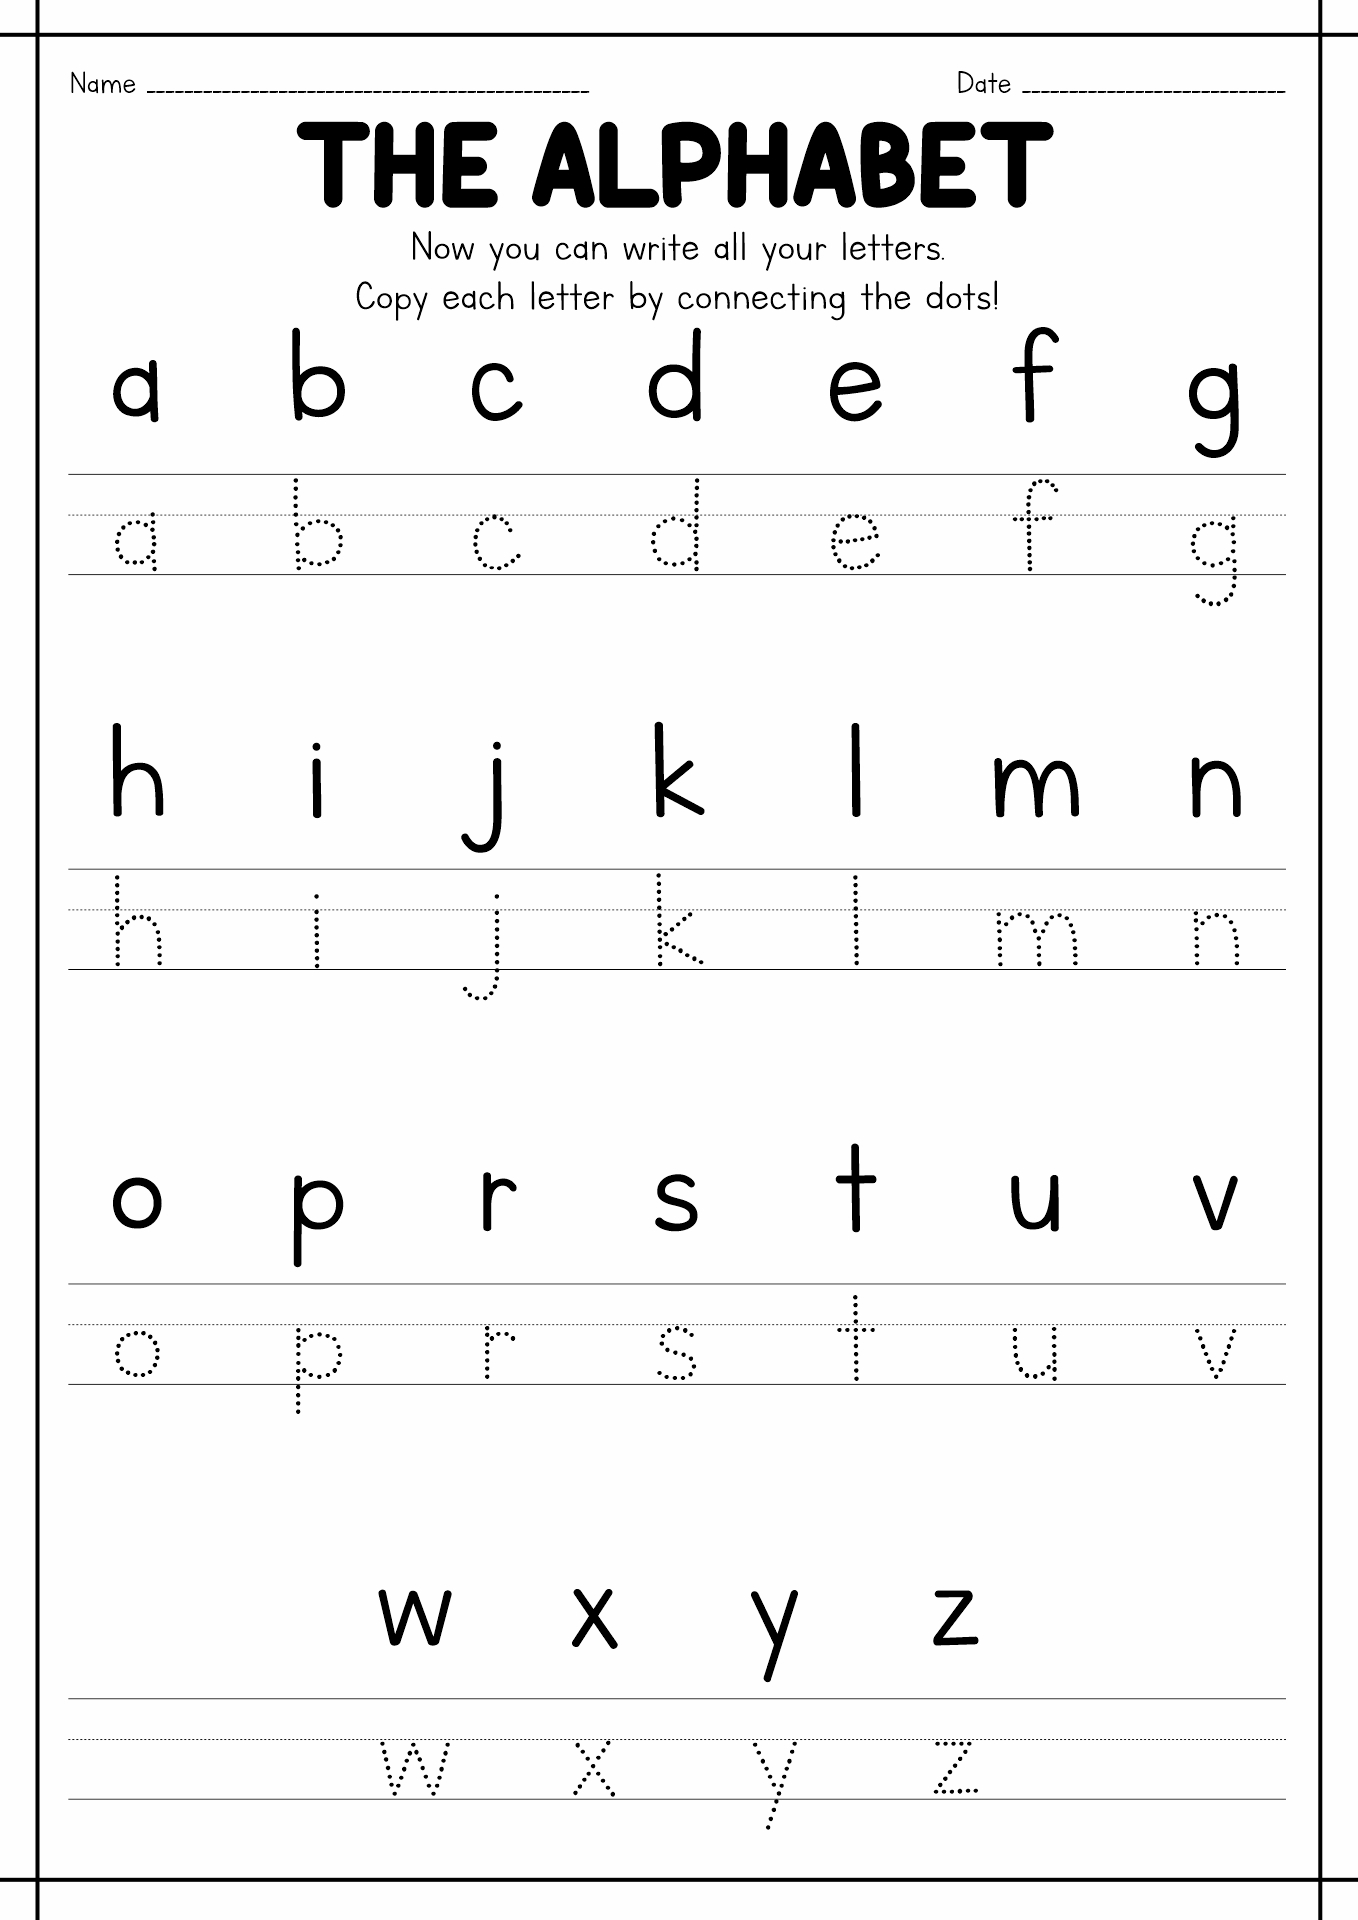 Preschool Writing Practice Worksheets Image